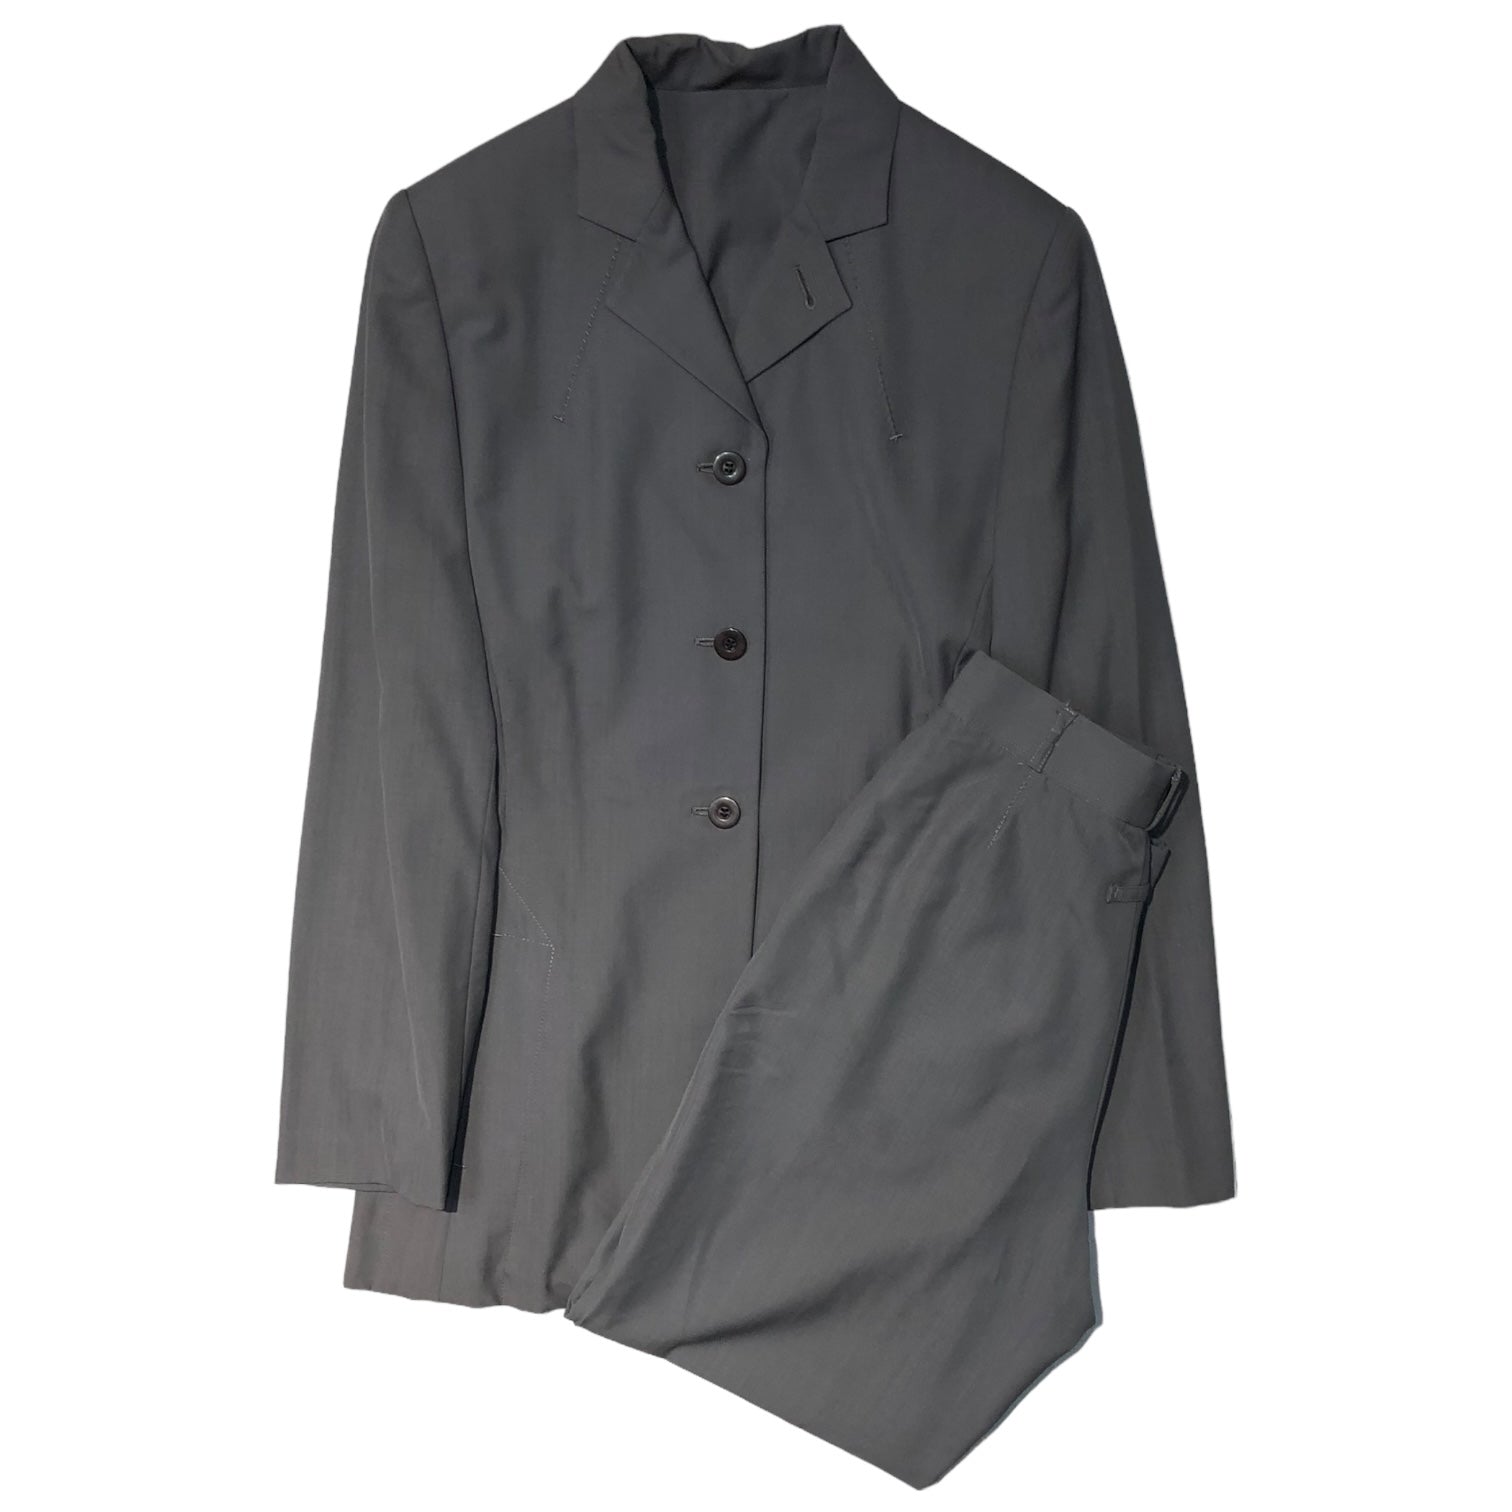 Jean Paul GAULTIER FEMME(ジャンポールゴルチエファム) 90’s 3B jacket design setup 3Bジャケット デザイン セットアップ 40(L程度) グレー スラックス テーラード スーツ